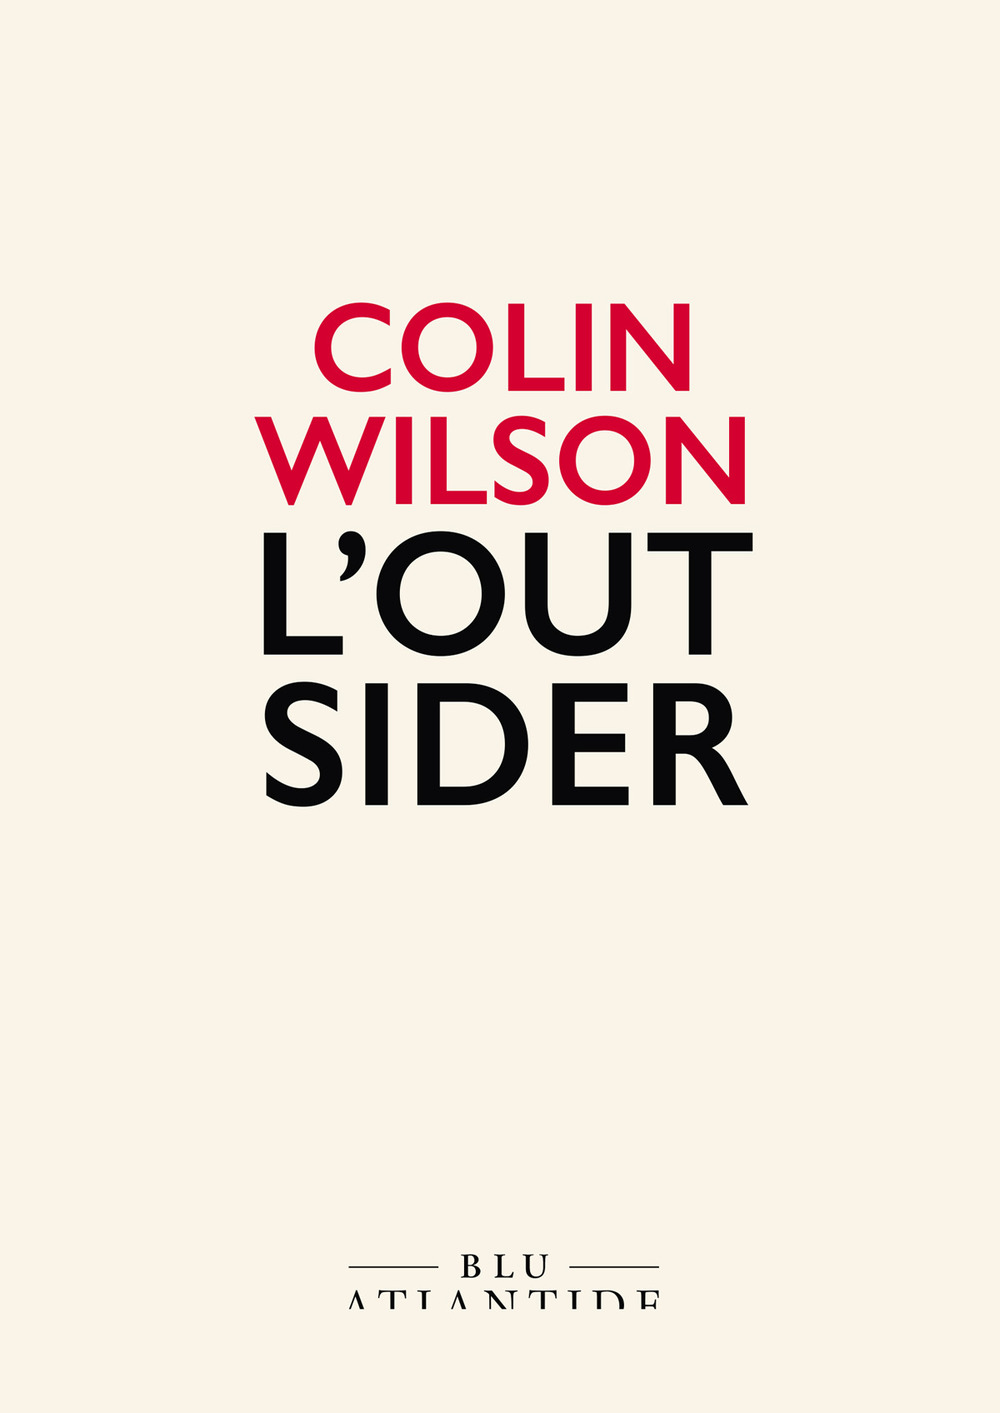 Libri Colin Wilson - L' Outsider NUOVO SIGILLATO, EDIZIONE DEL 14/10/2020 SUBITO DISPONIBILE